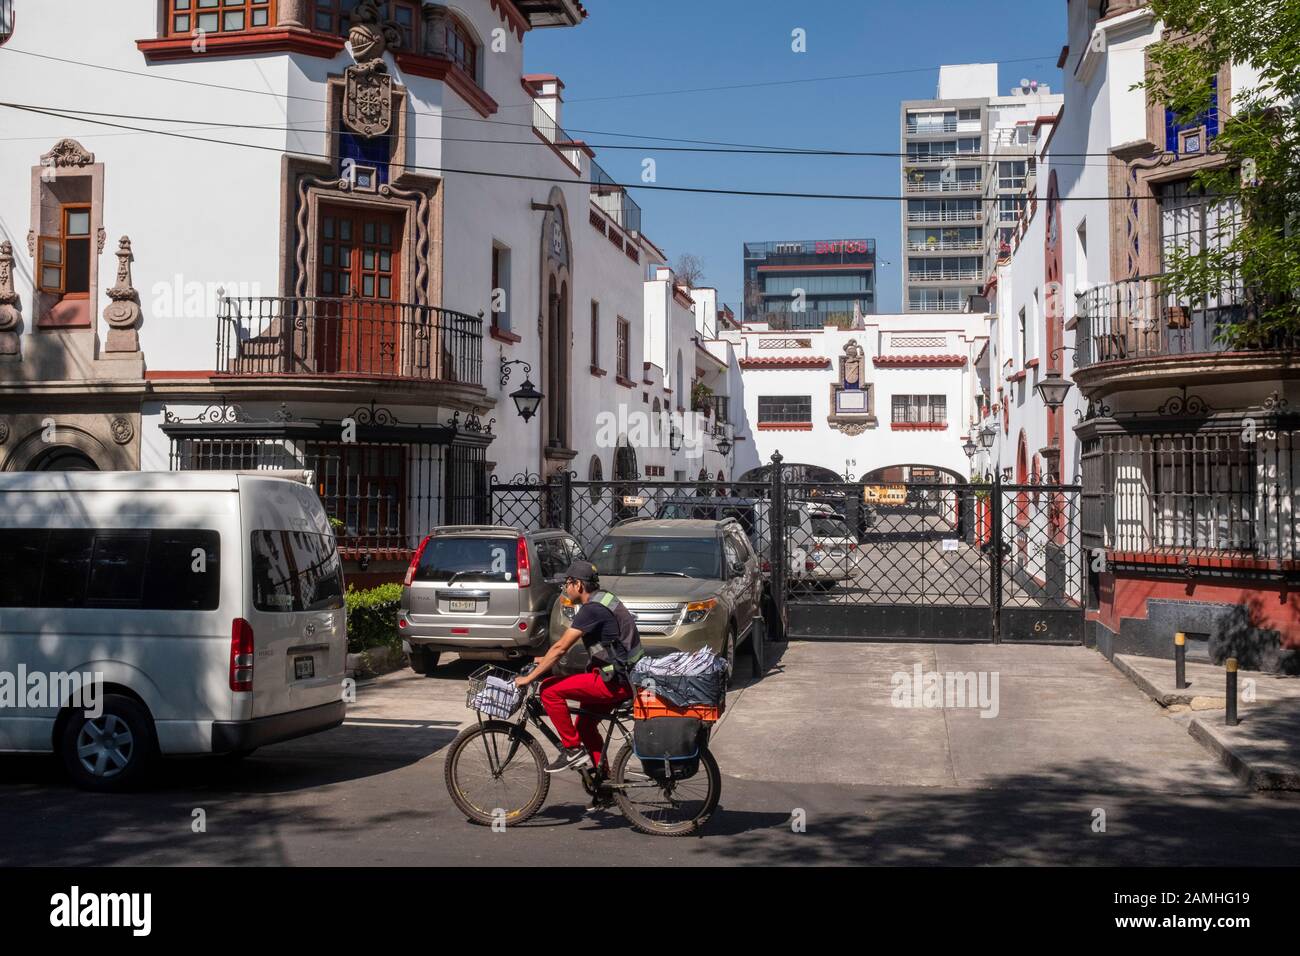 Street scene, La Condesa. Stock Photo